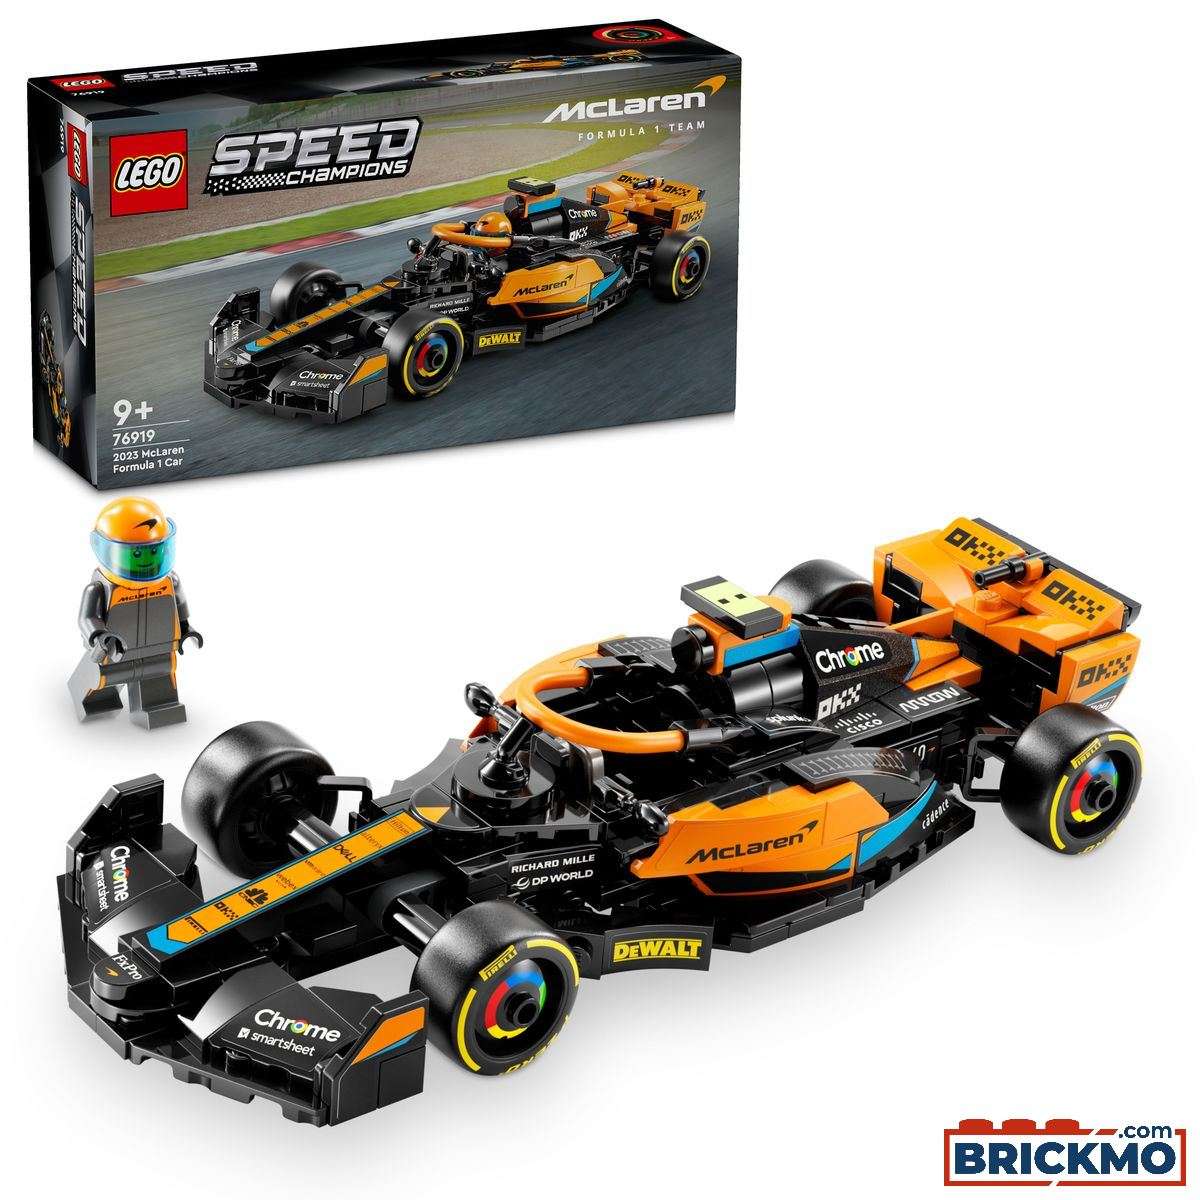 LEGO Speed Champions 76919 Samochód wyścigowy McLaren Formula 1 wersja 2023 76919